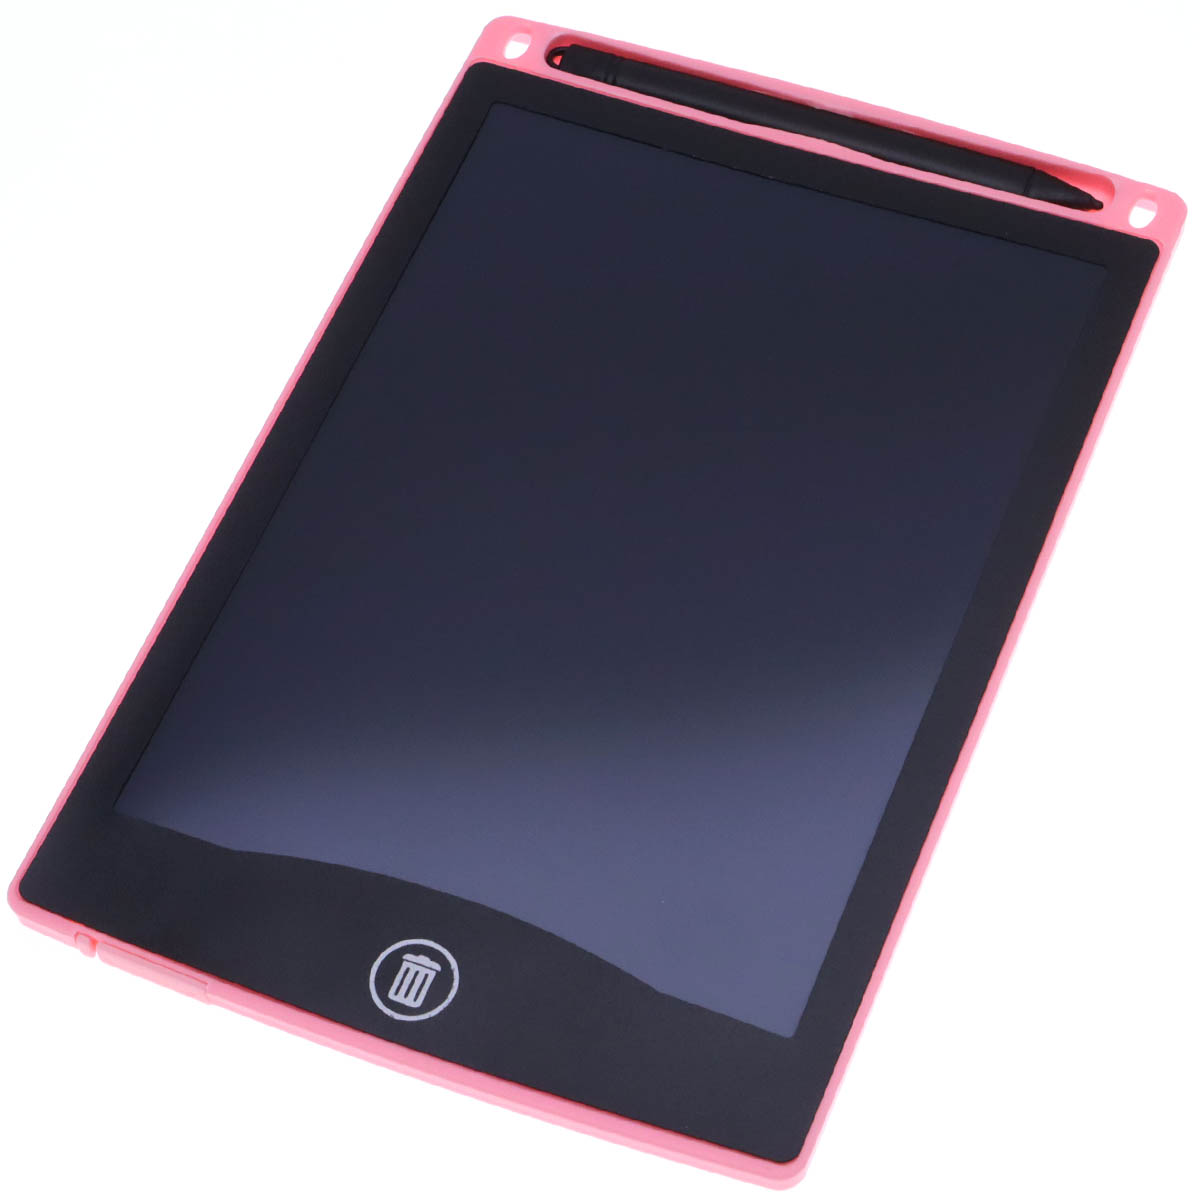 Графический планшет BAIBIAN с сенсорным цветным дисплеем для рисования, 8.5 дюймов, цвет розовый